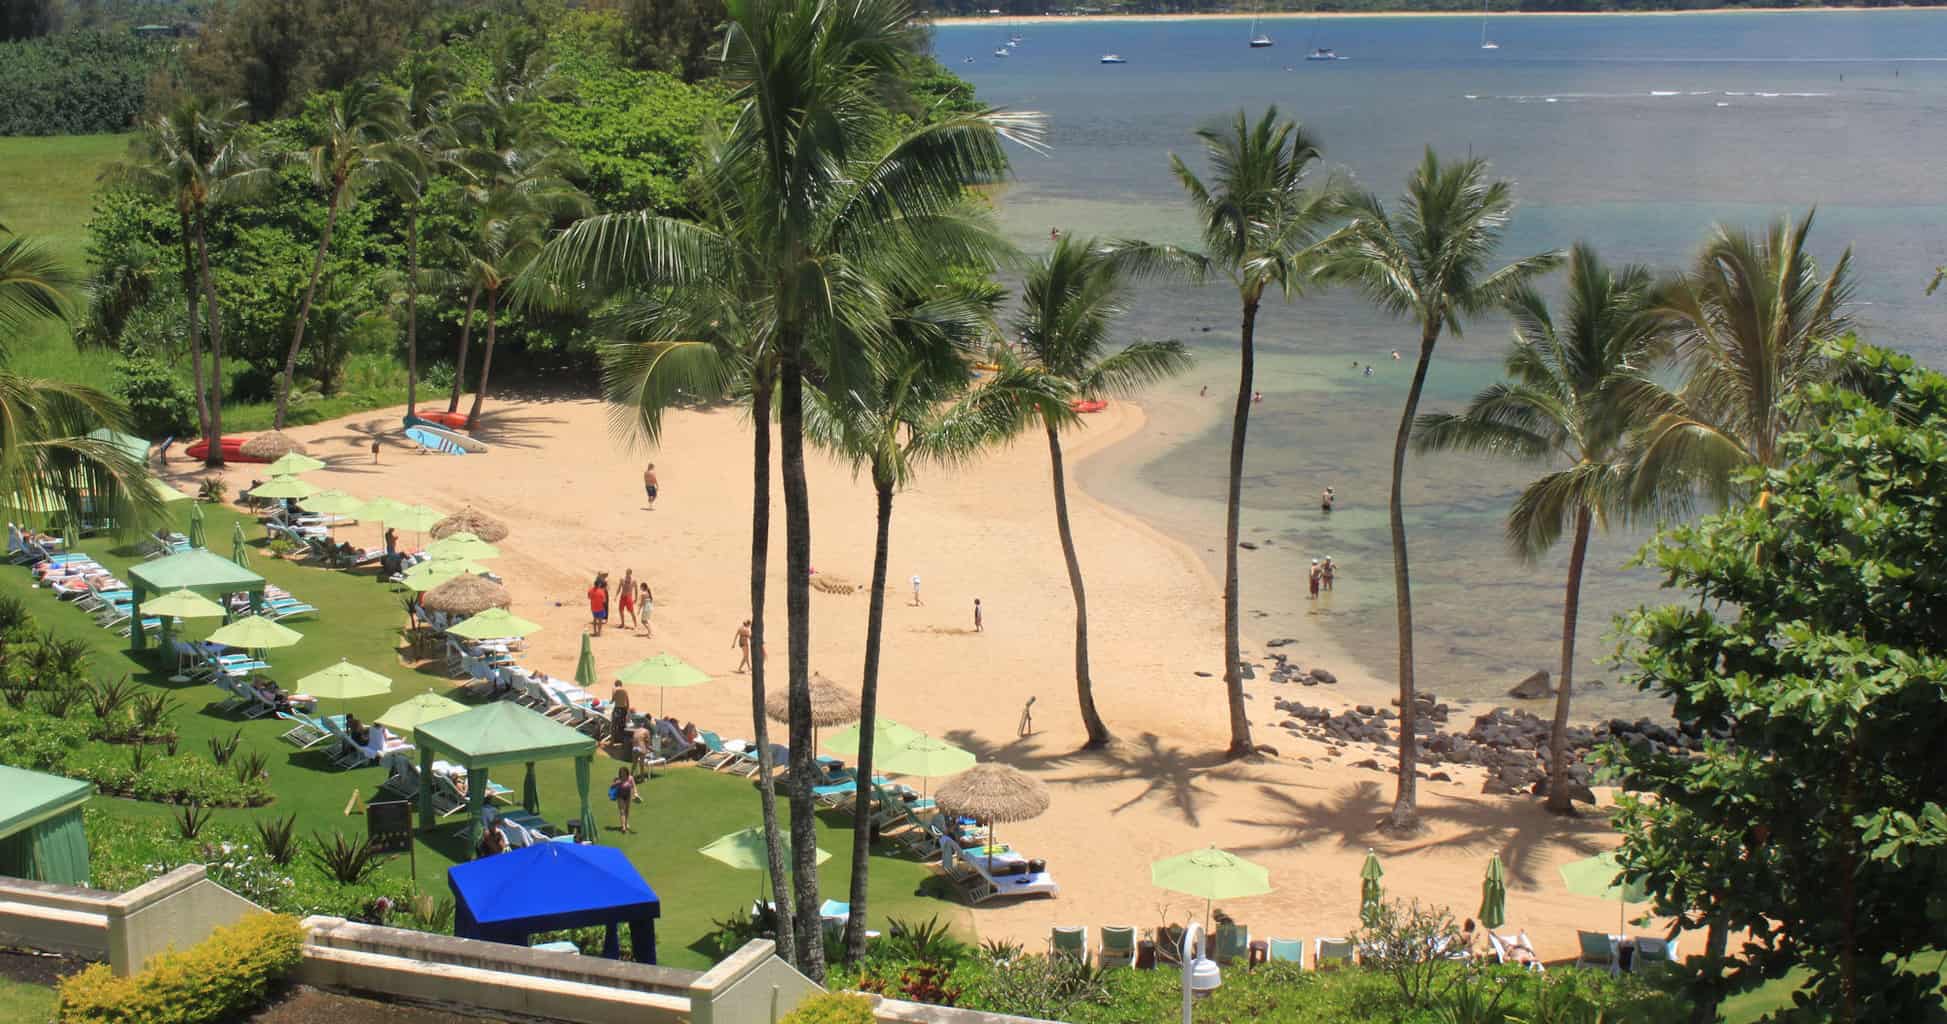 Puu Poa Beach Kauai